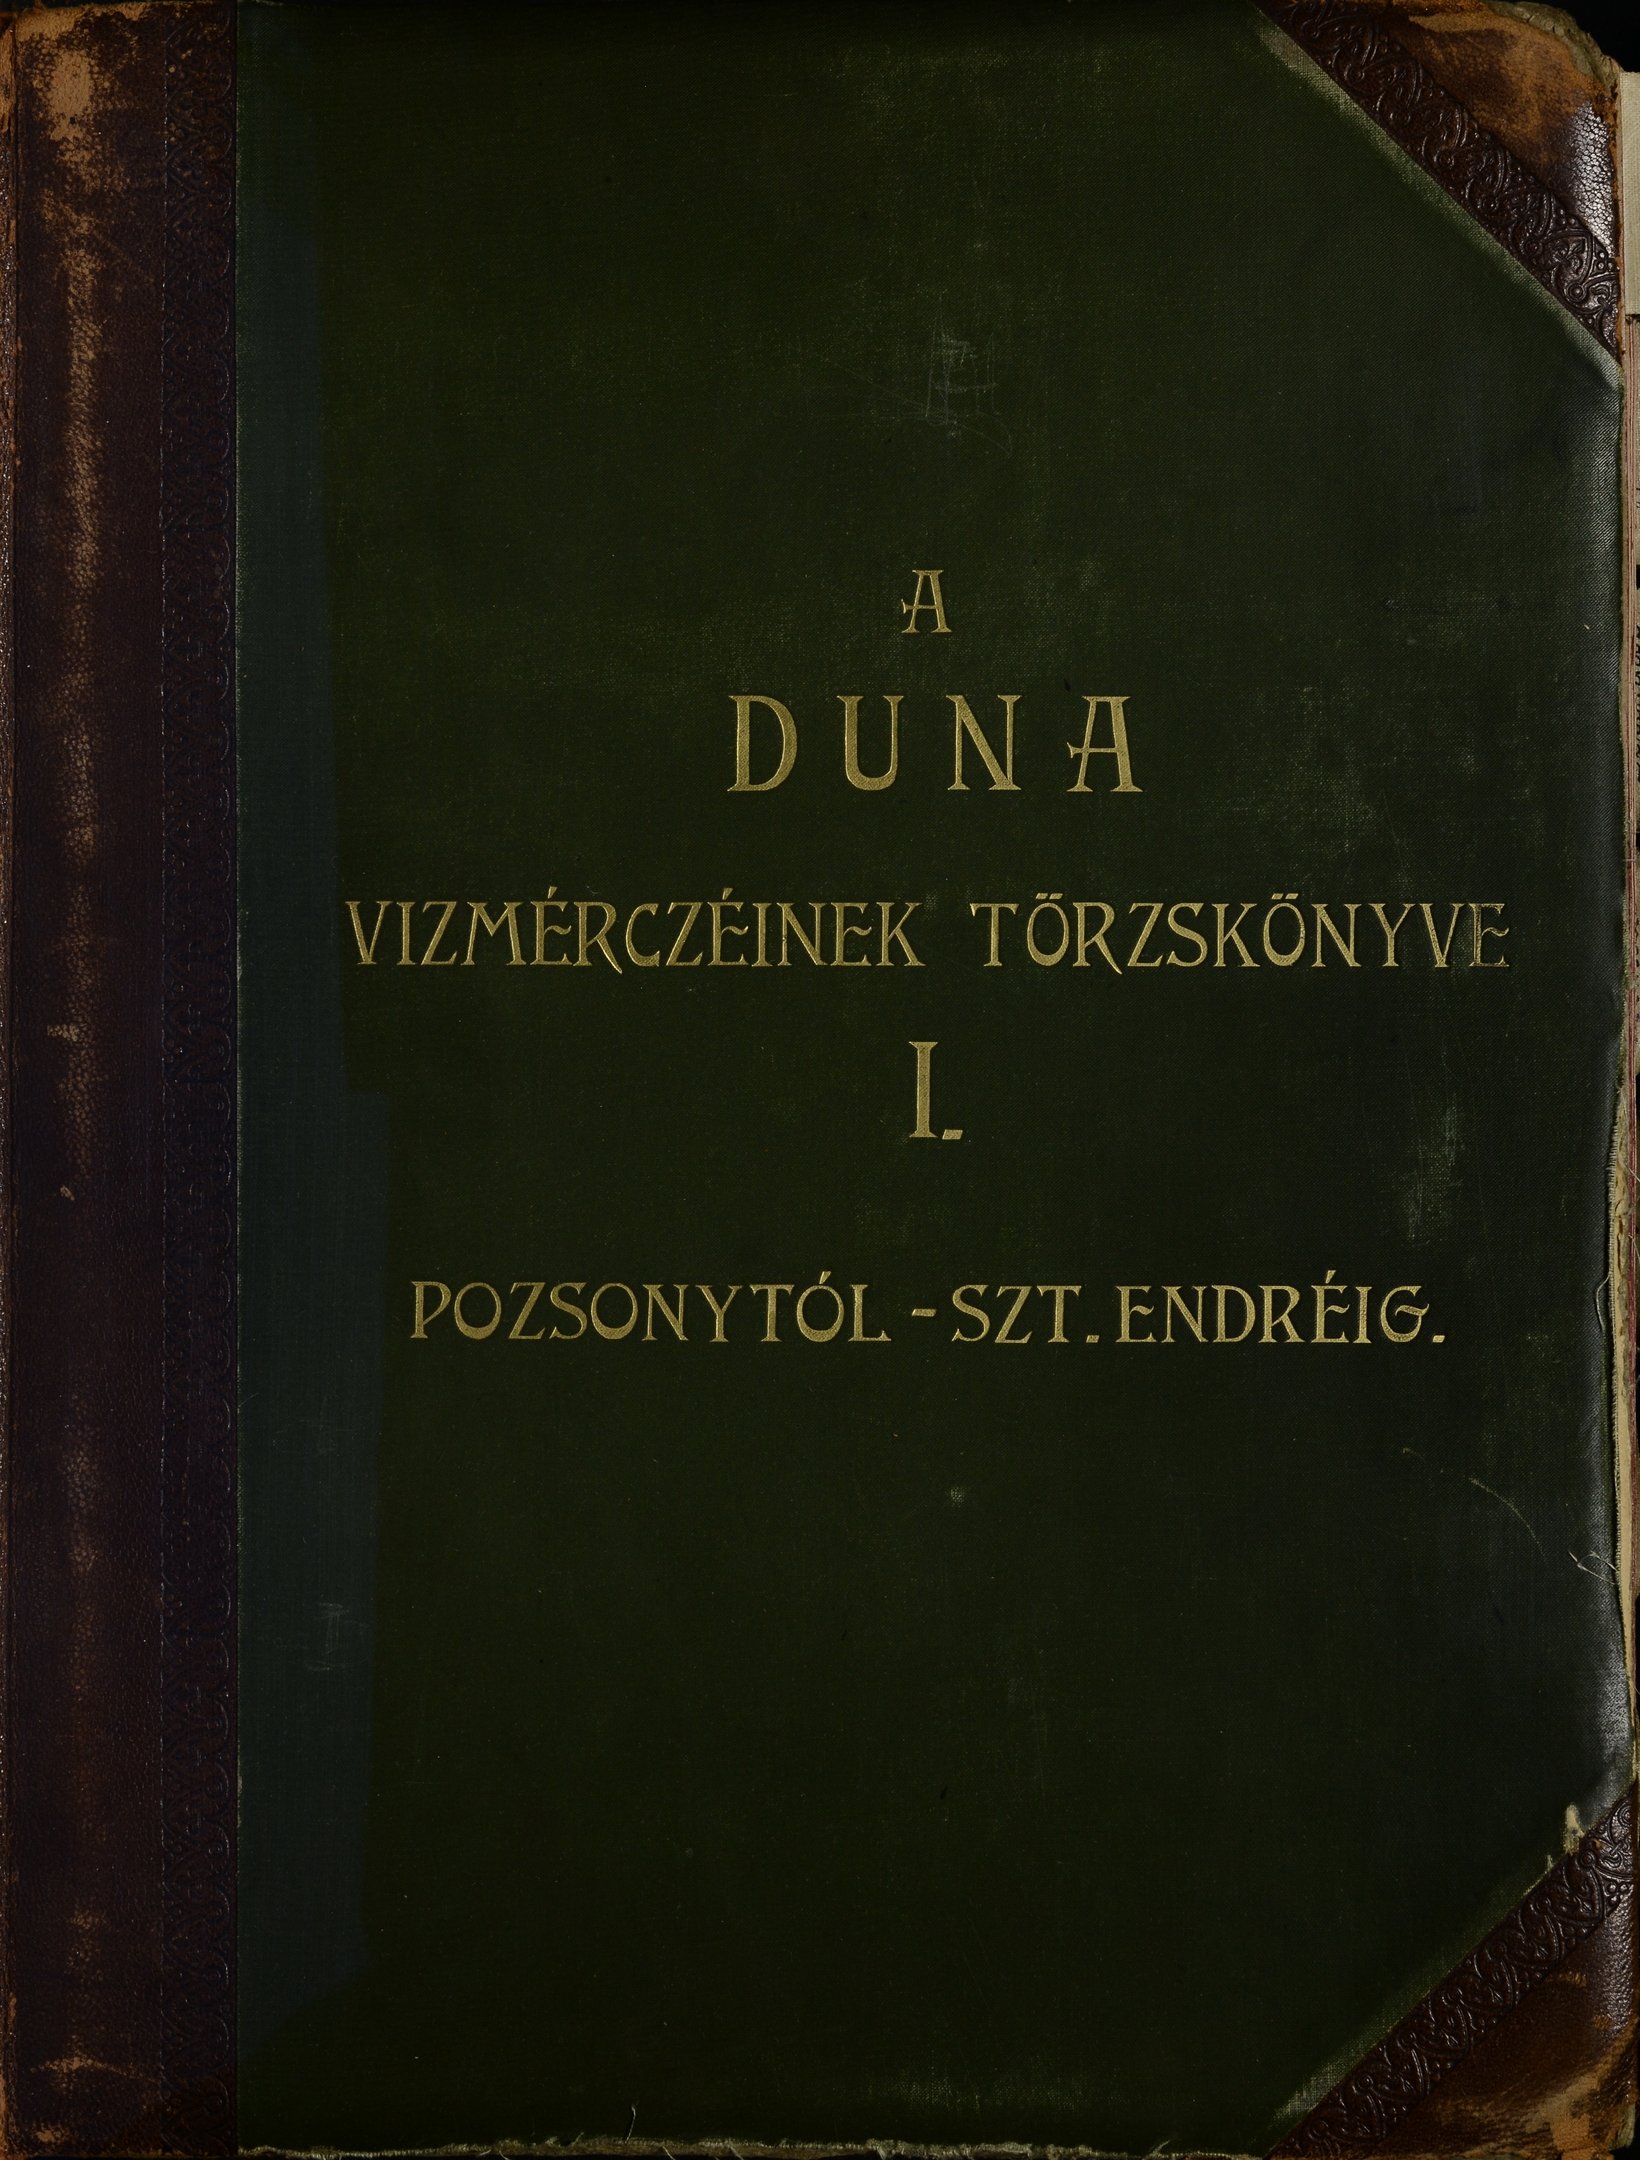 A Duna vízmércéinek törzskönyve I. - Pozsonytól Szt. Endréig (Magyar Környezetvédelmi és Vízügyi Múzeum - Duna Múzeum CC BY-NC-SA)